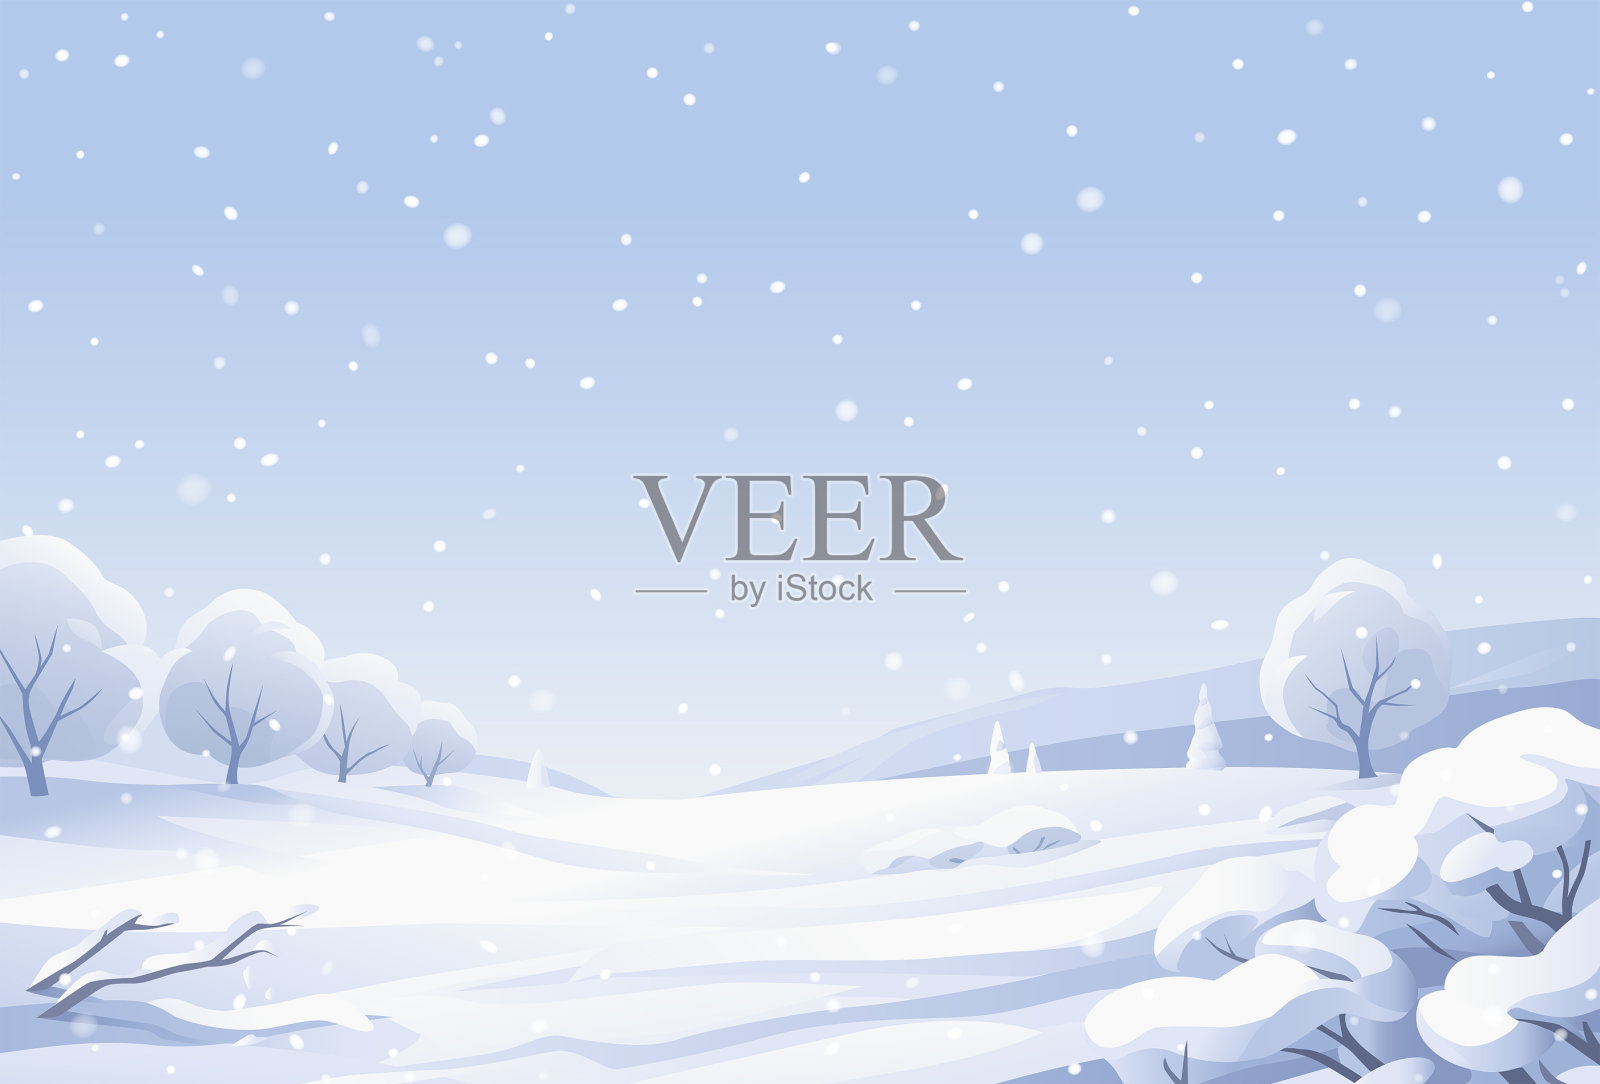 冬天的风景与白雪覆盖的树木插画图片素材